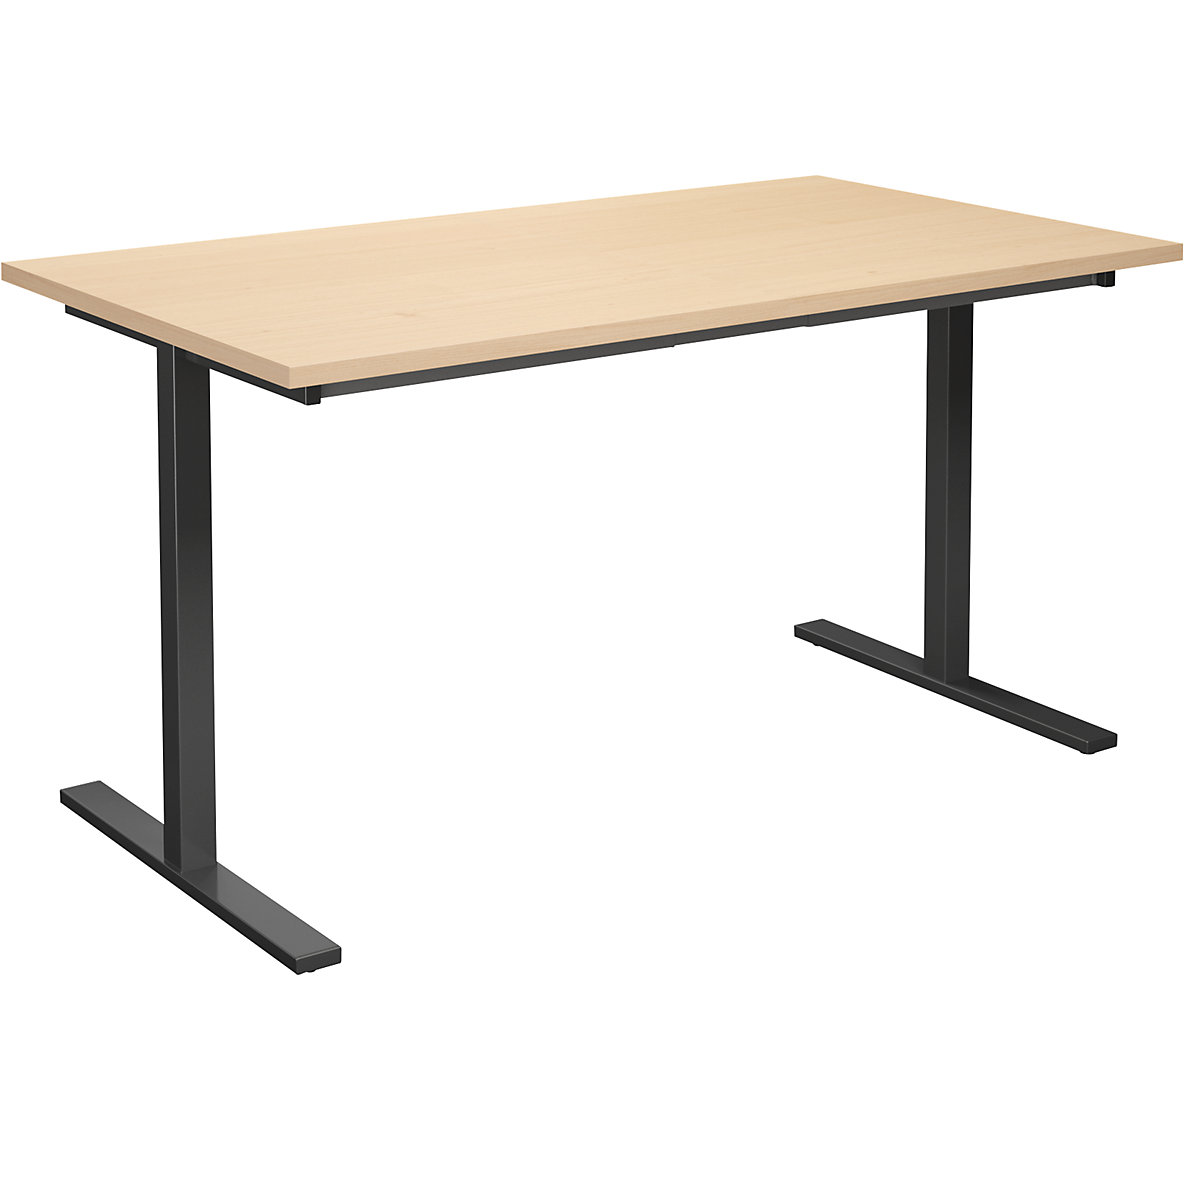 DUO-T multi-purpose desk, straight tabletop, WxD 1400 x 800 mm, birch, black-11